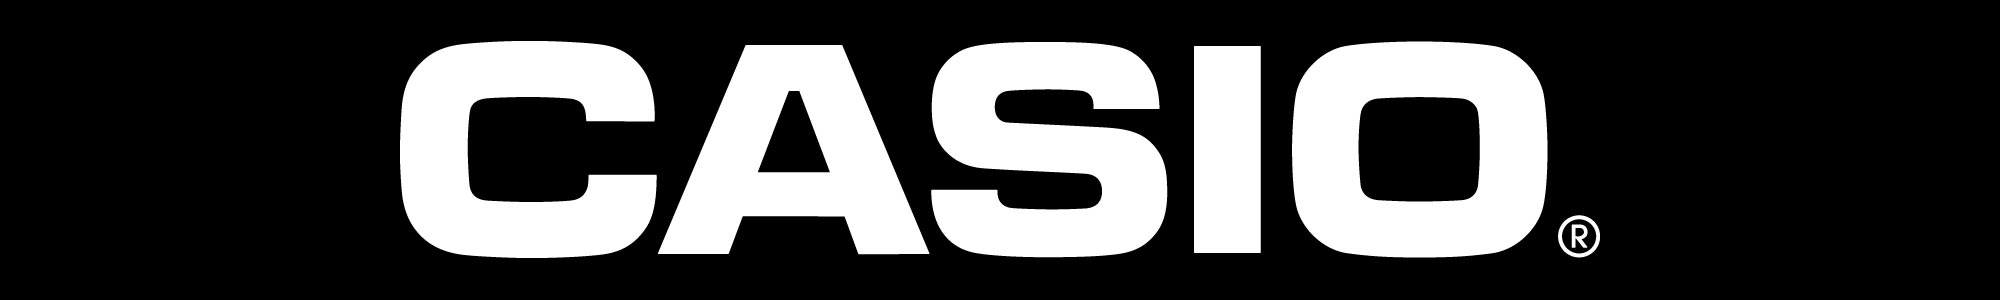 Casio Logo Header White Logo Black Background